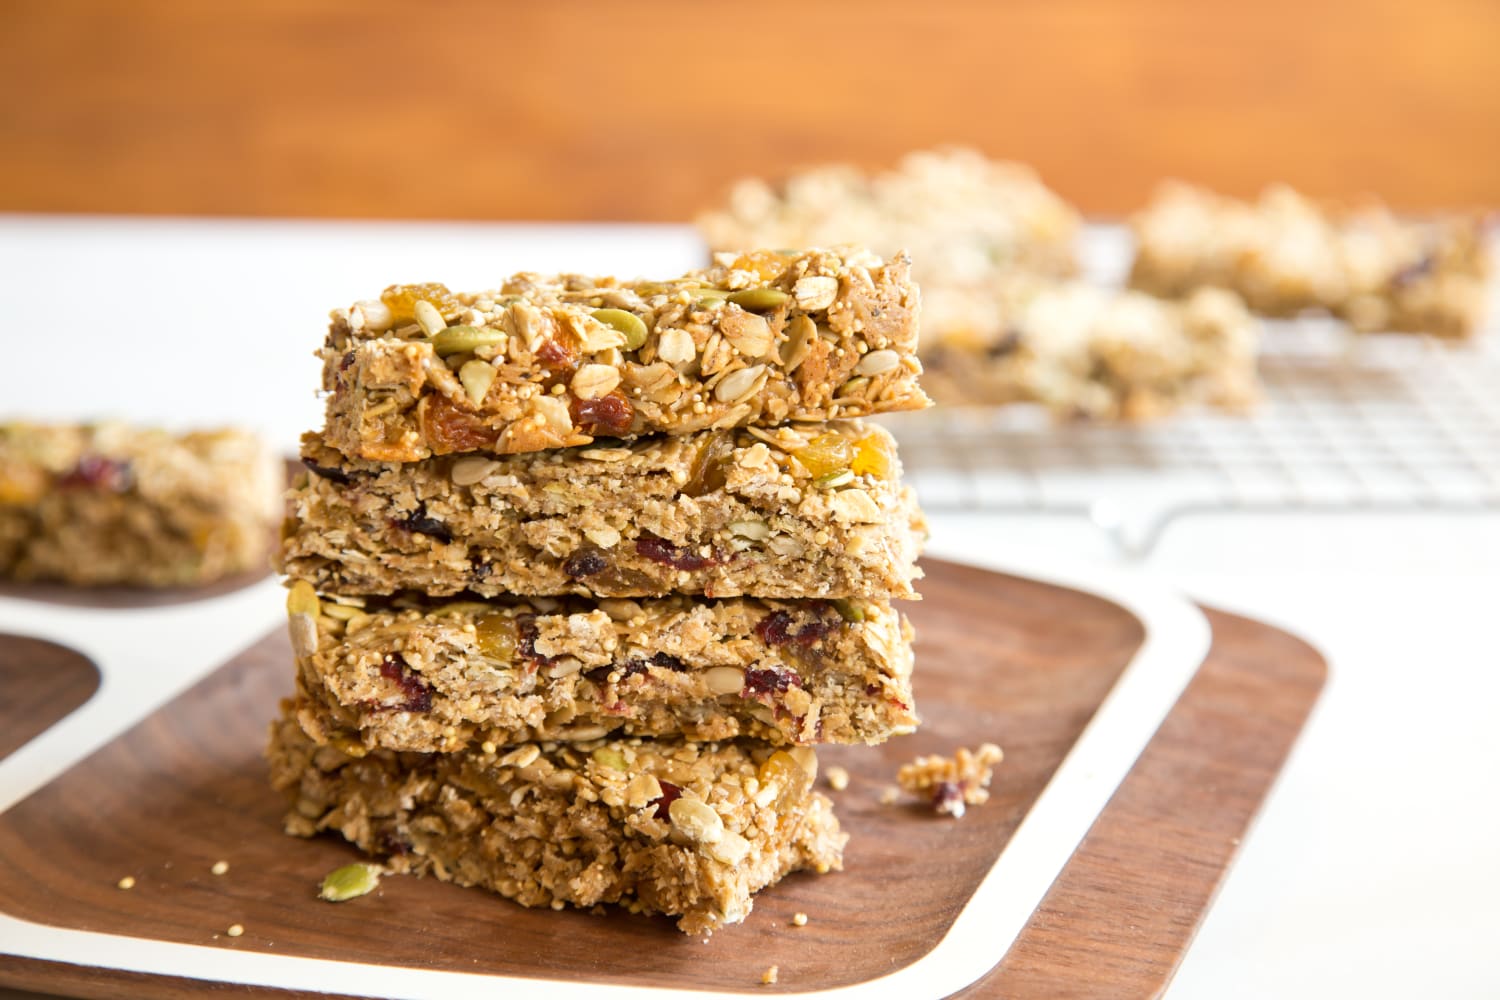 Make homemade granola bars for easy snacking